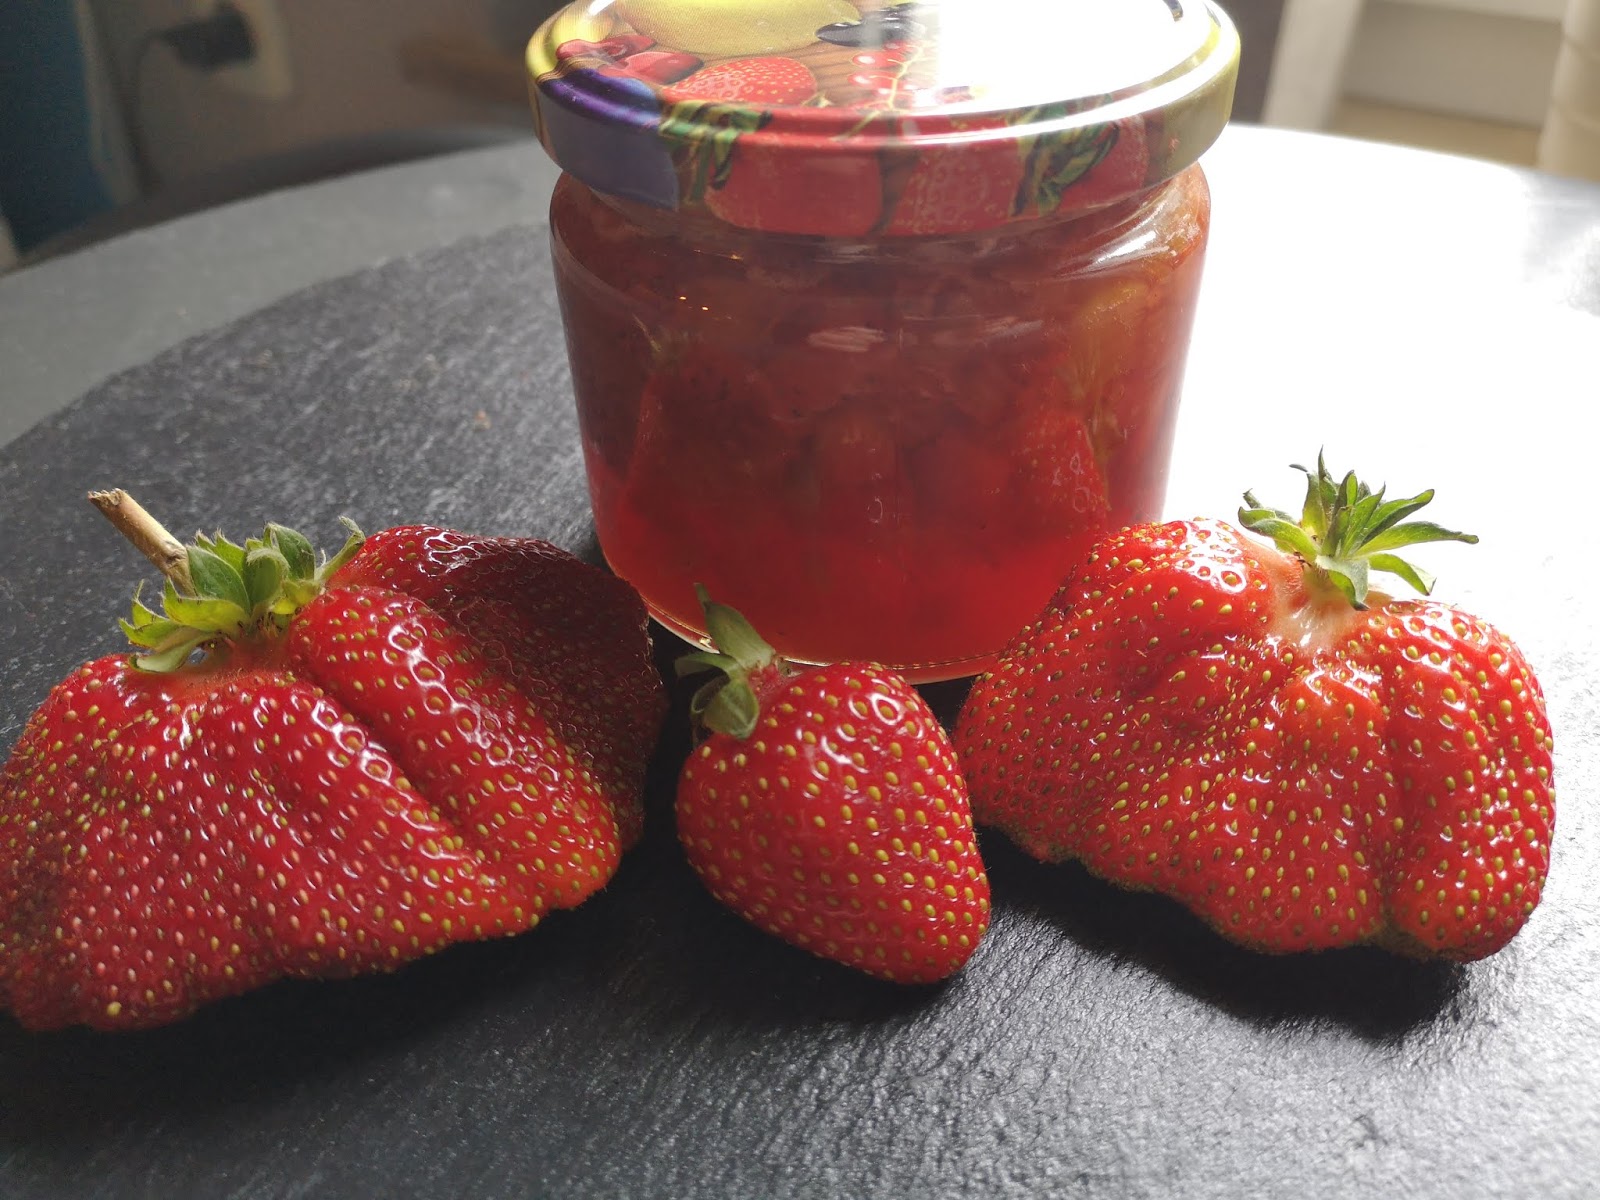 Verboten gut ⚠: Erdbeer ~ Rhabarber ~ Konfitüre